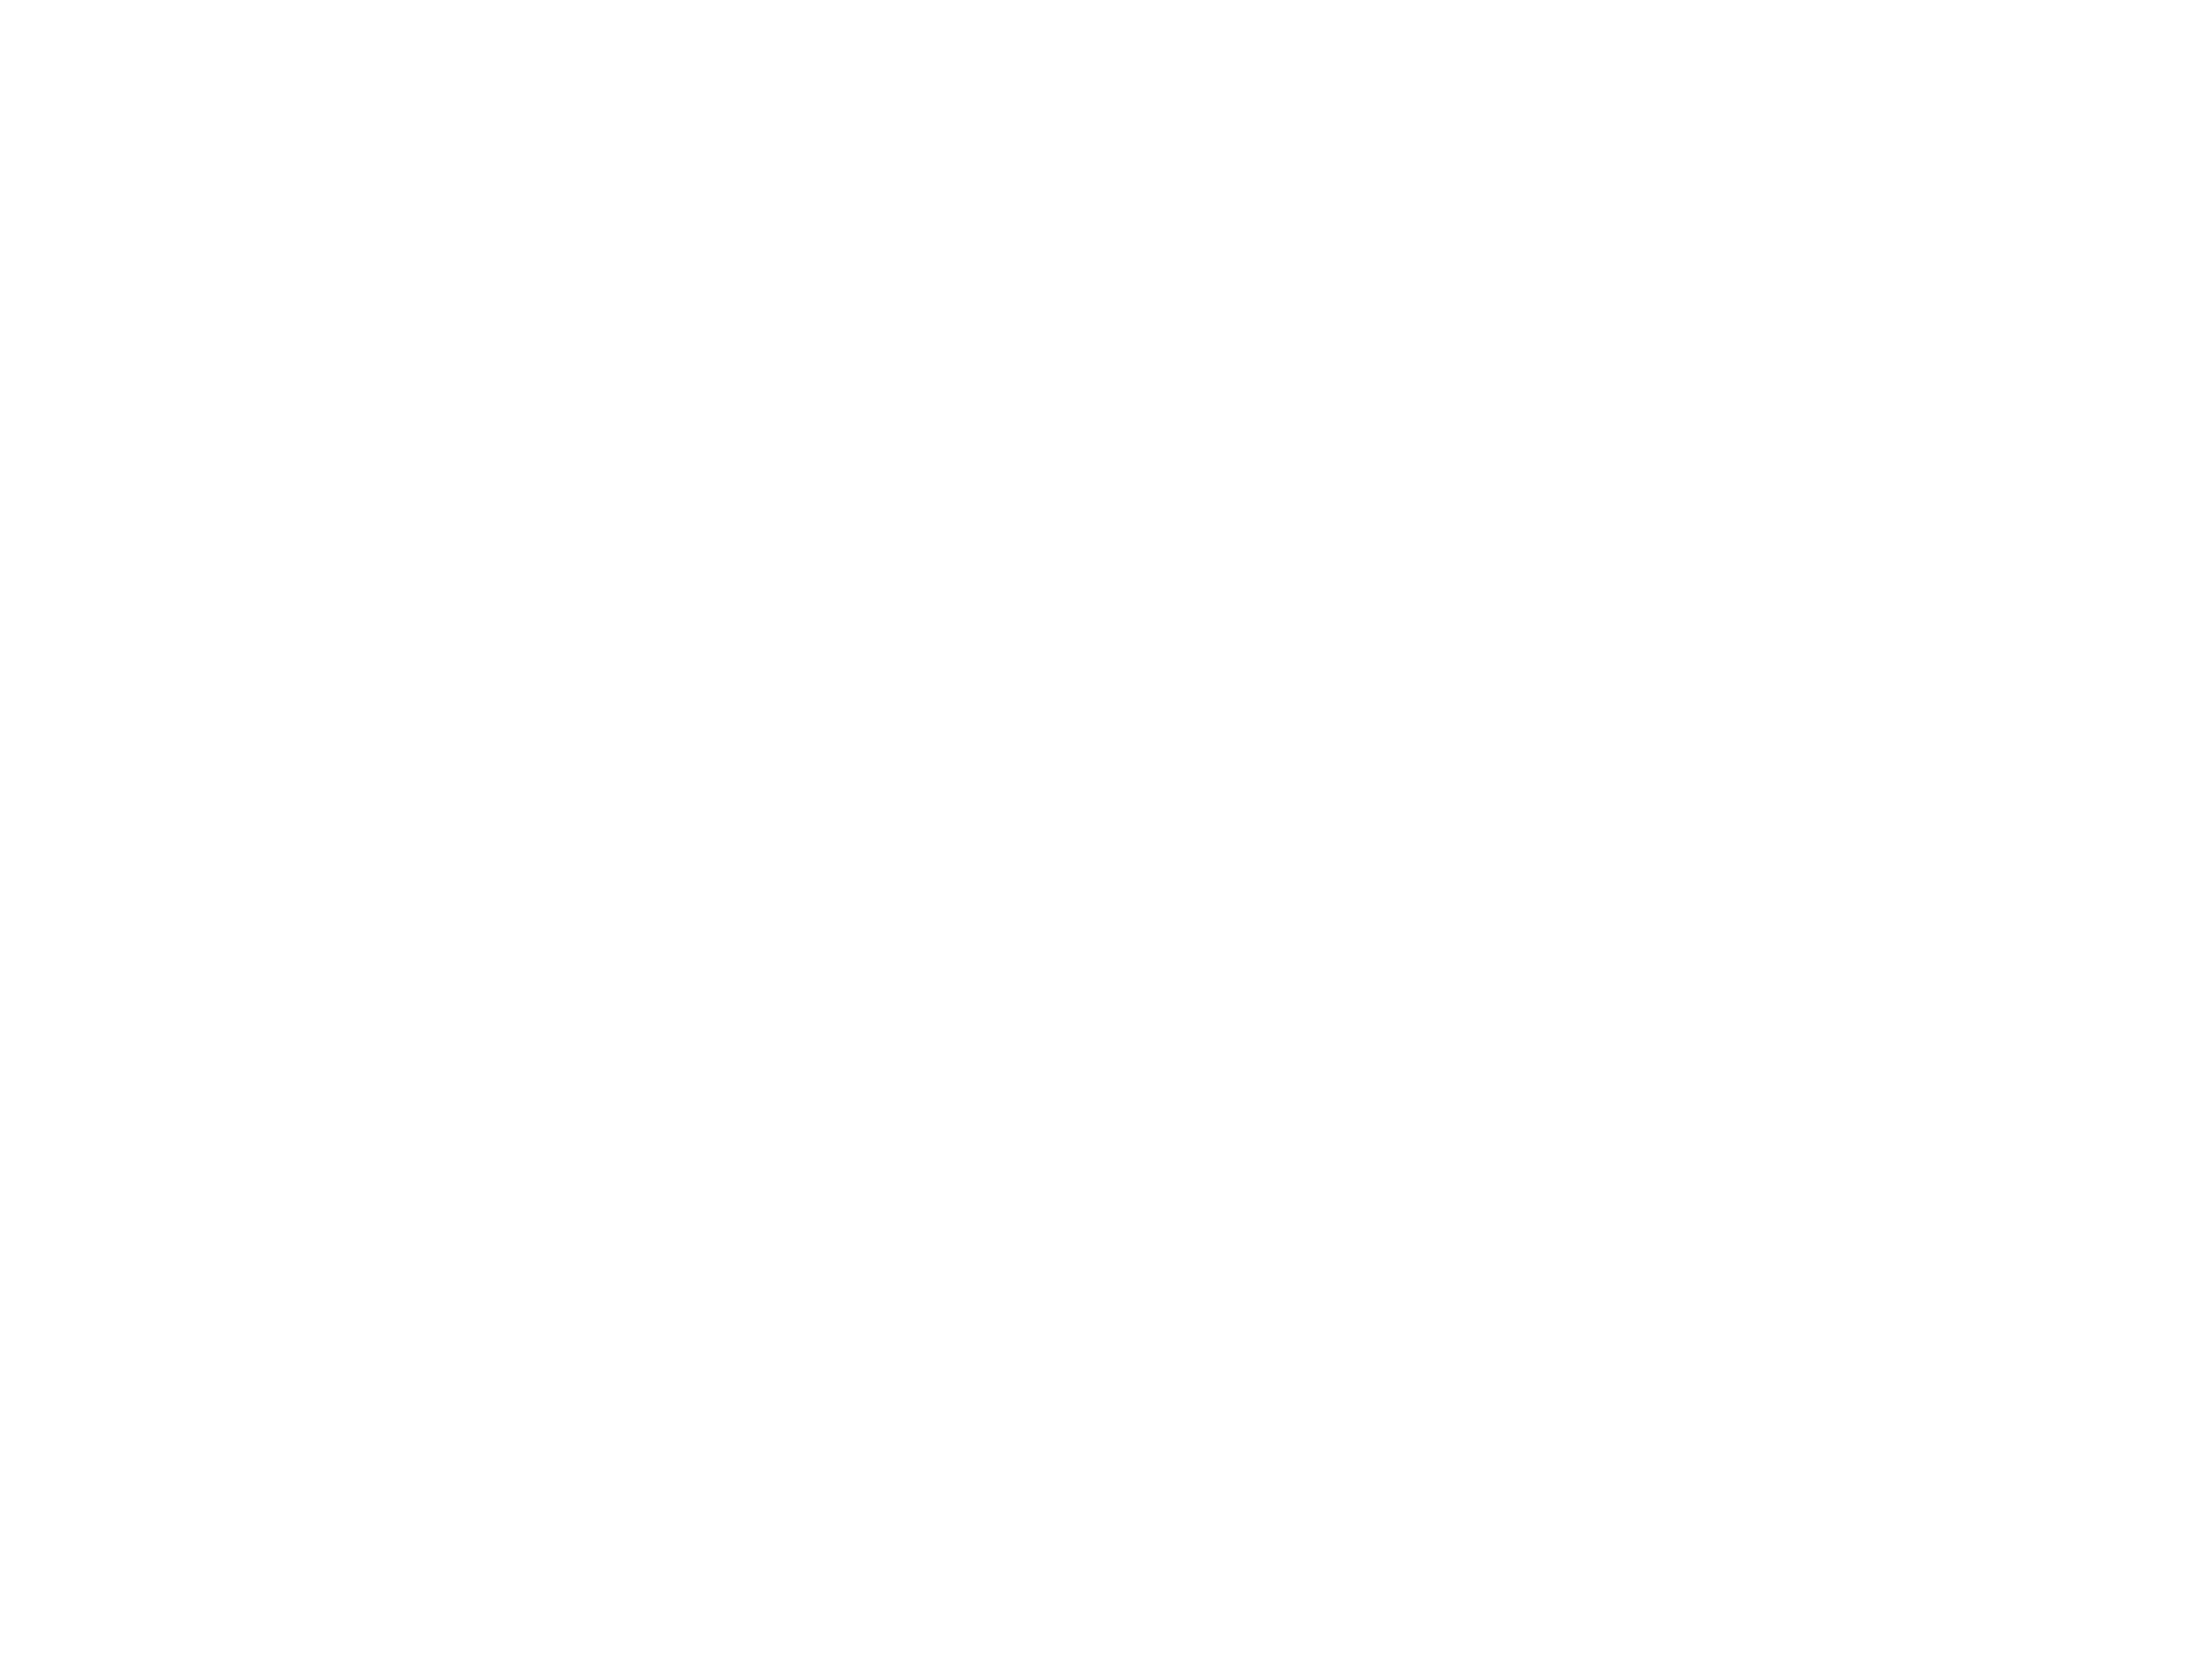 Podere Carducci